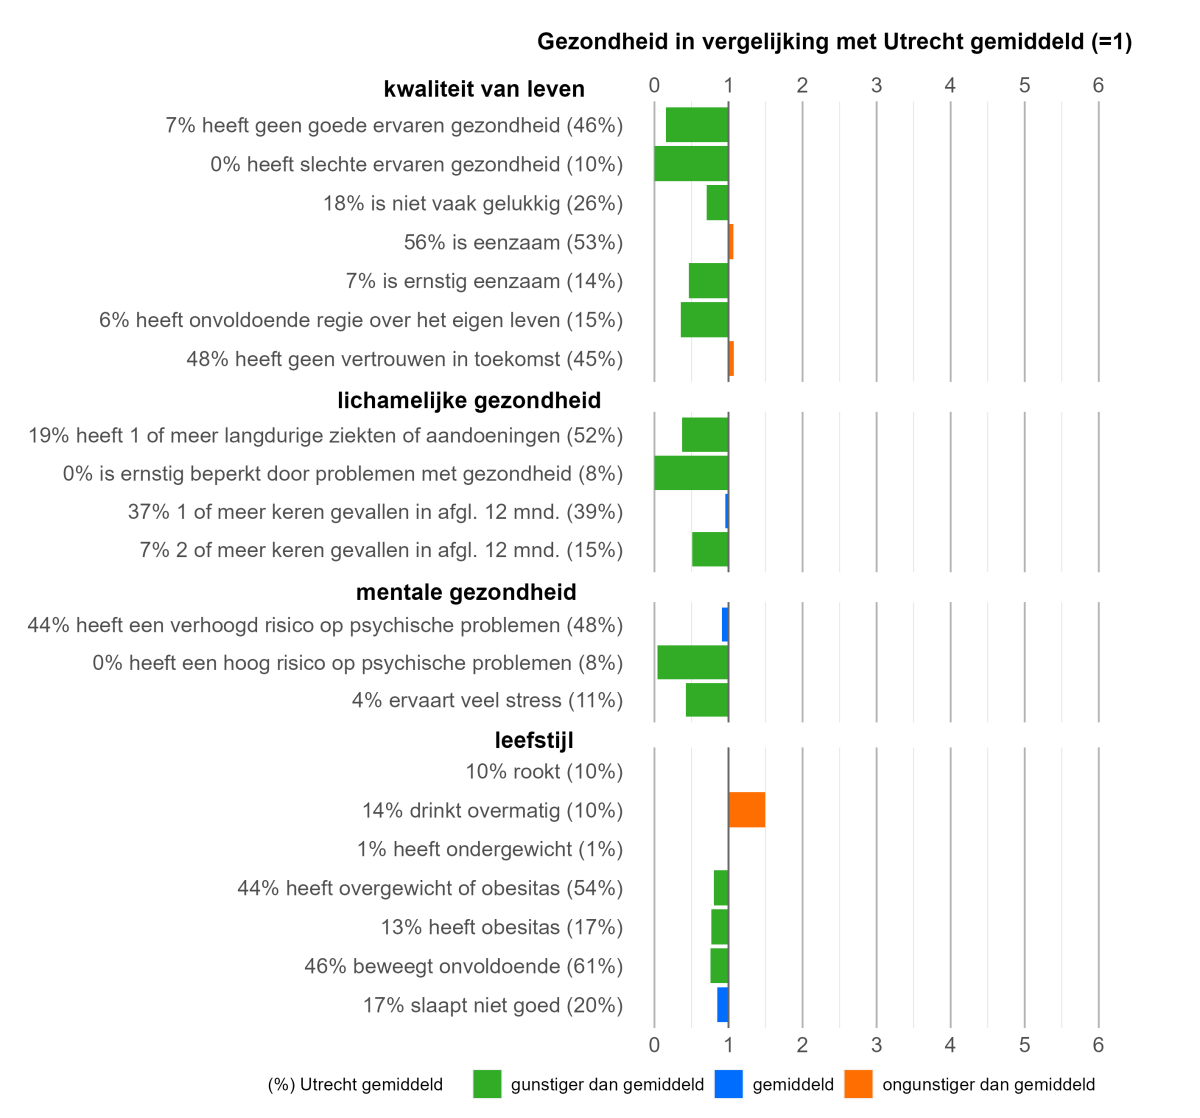 Ouderen die zich goed gezond voelen scoren op veel aspecten van gezondheid gunstiger of vergelijkbaar met gemiddeld in Utrecht. 